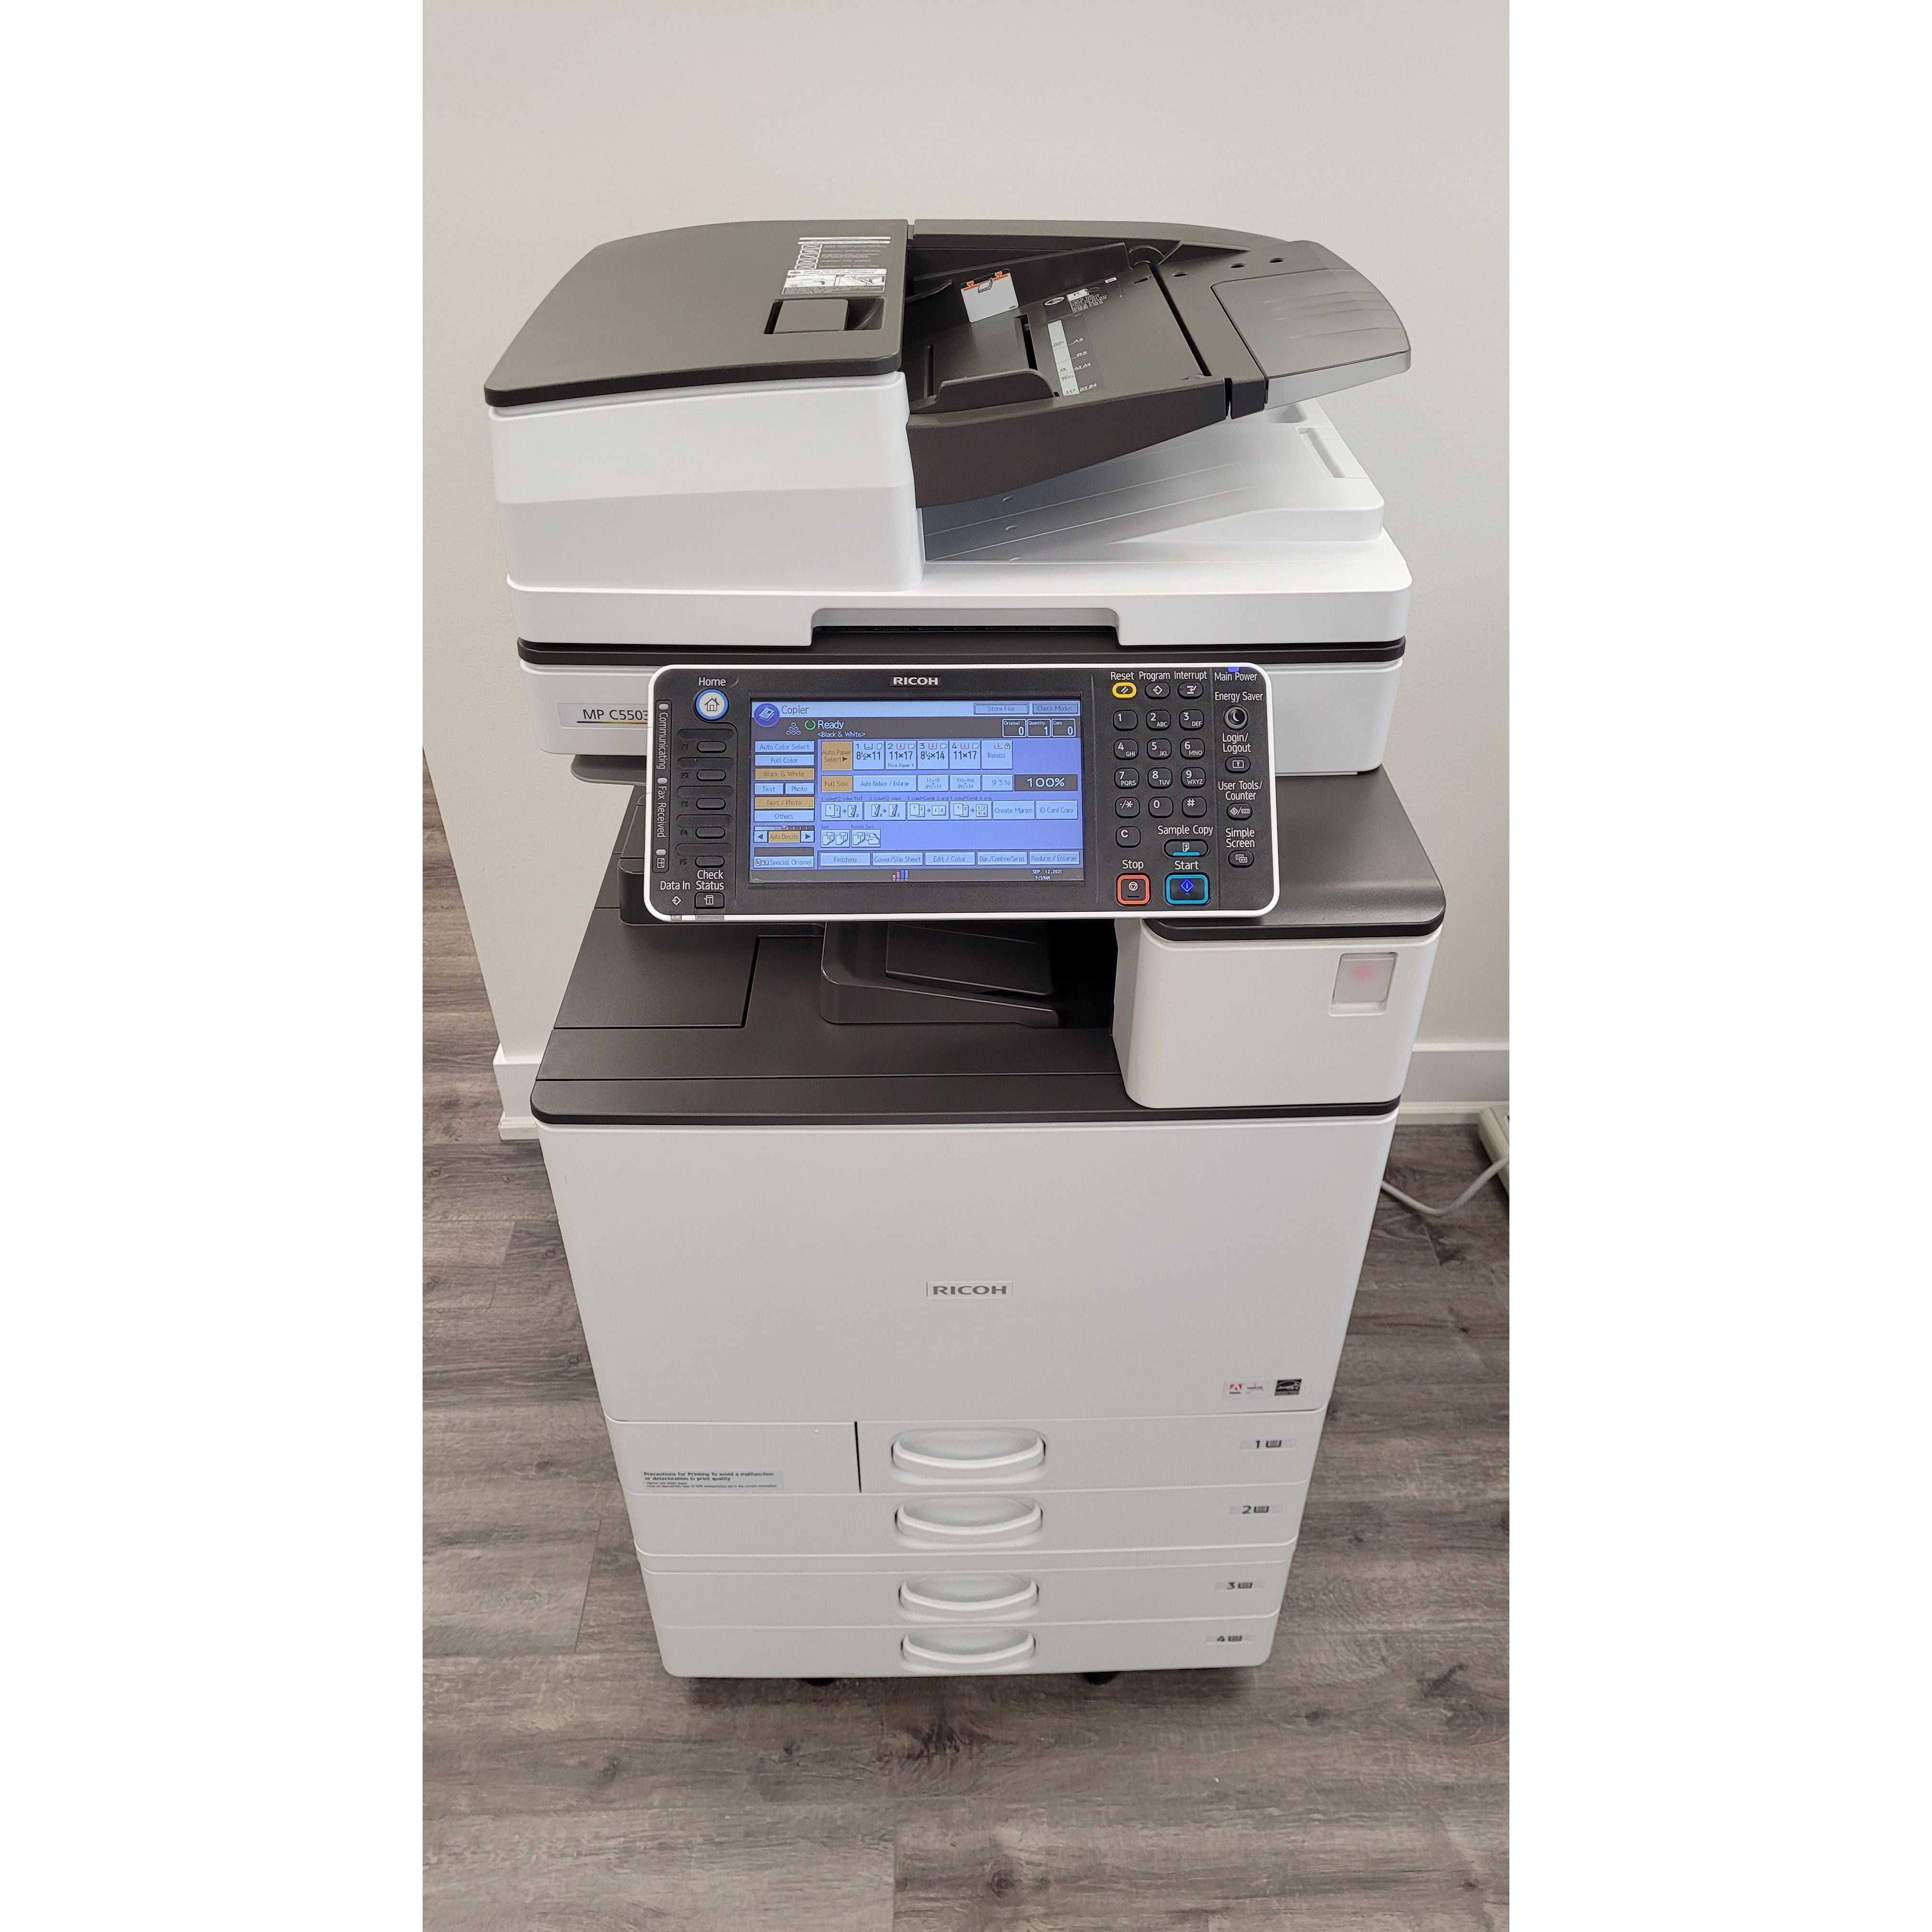 Off-Lease Ricoh MP C5503 Colour Printer Copy/Print/Scan